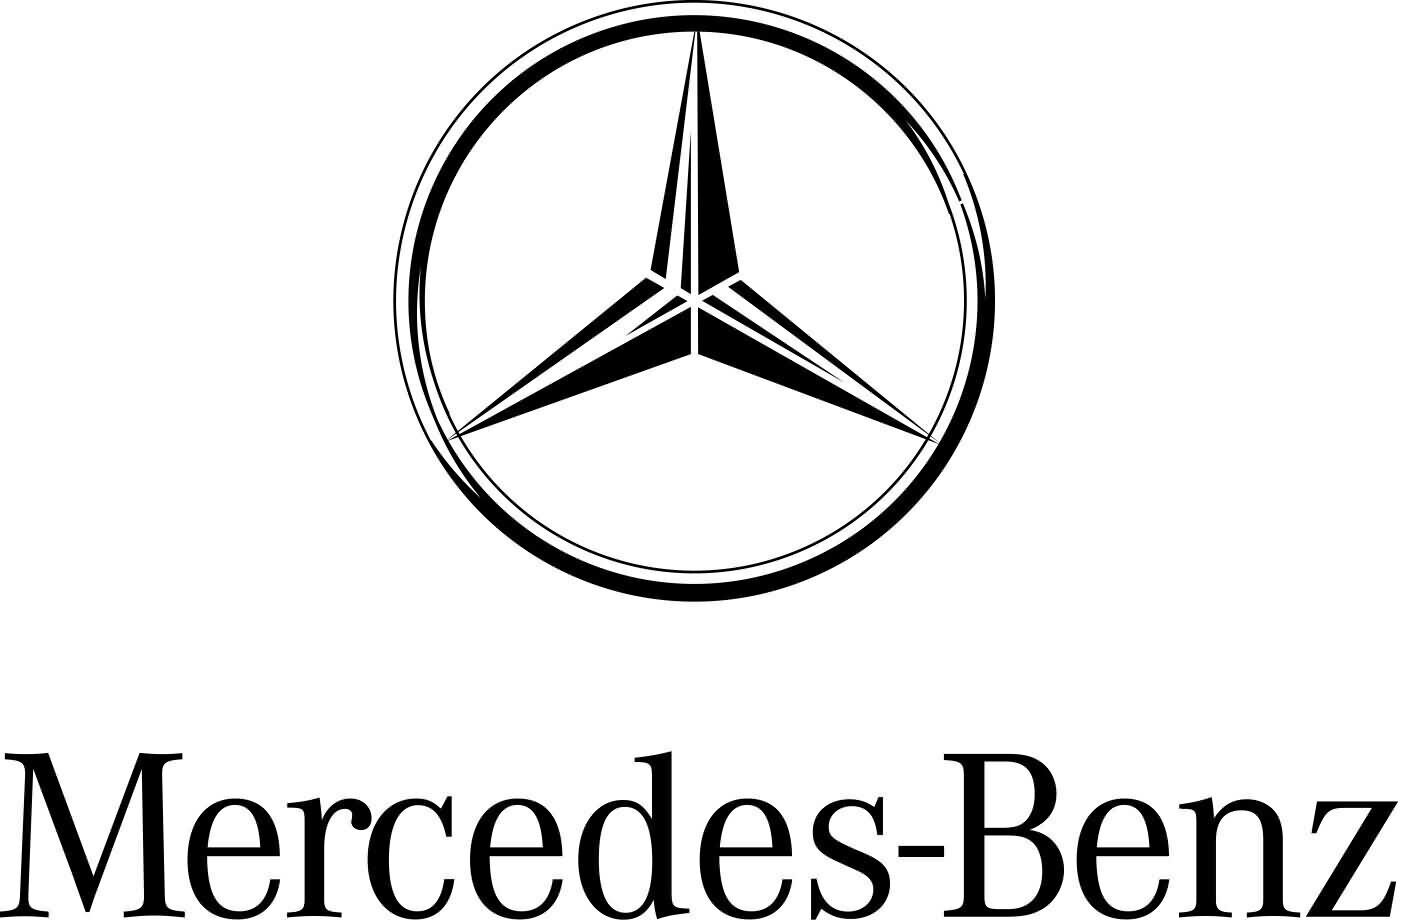 Genuine Mercedes-Benz Sl65 Amg Trunk Lid-Emblem Badge Nameplate Mercedes Star 23